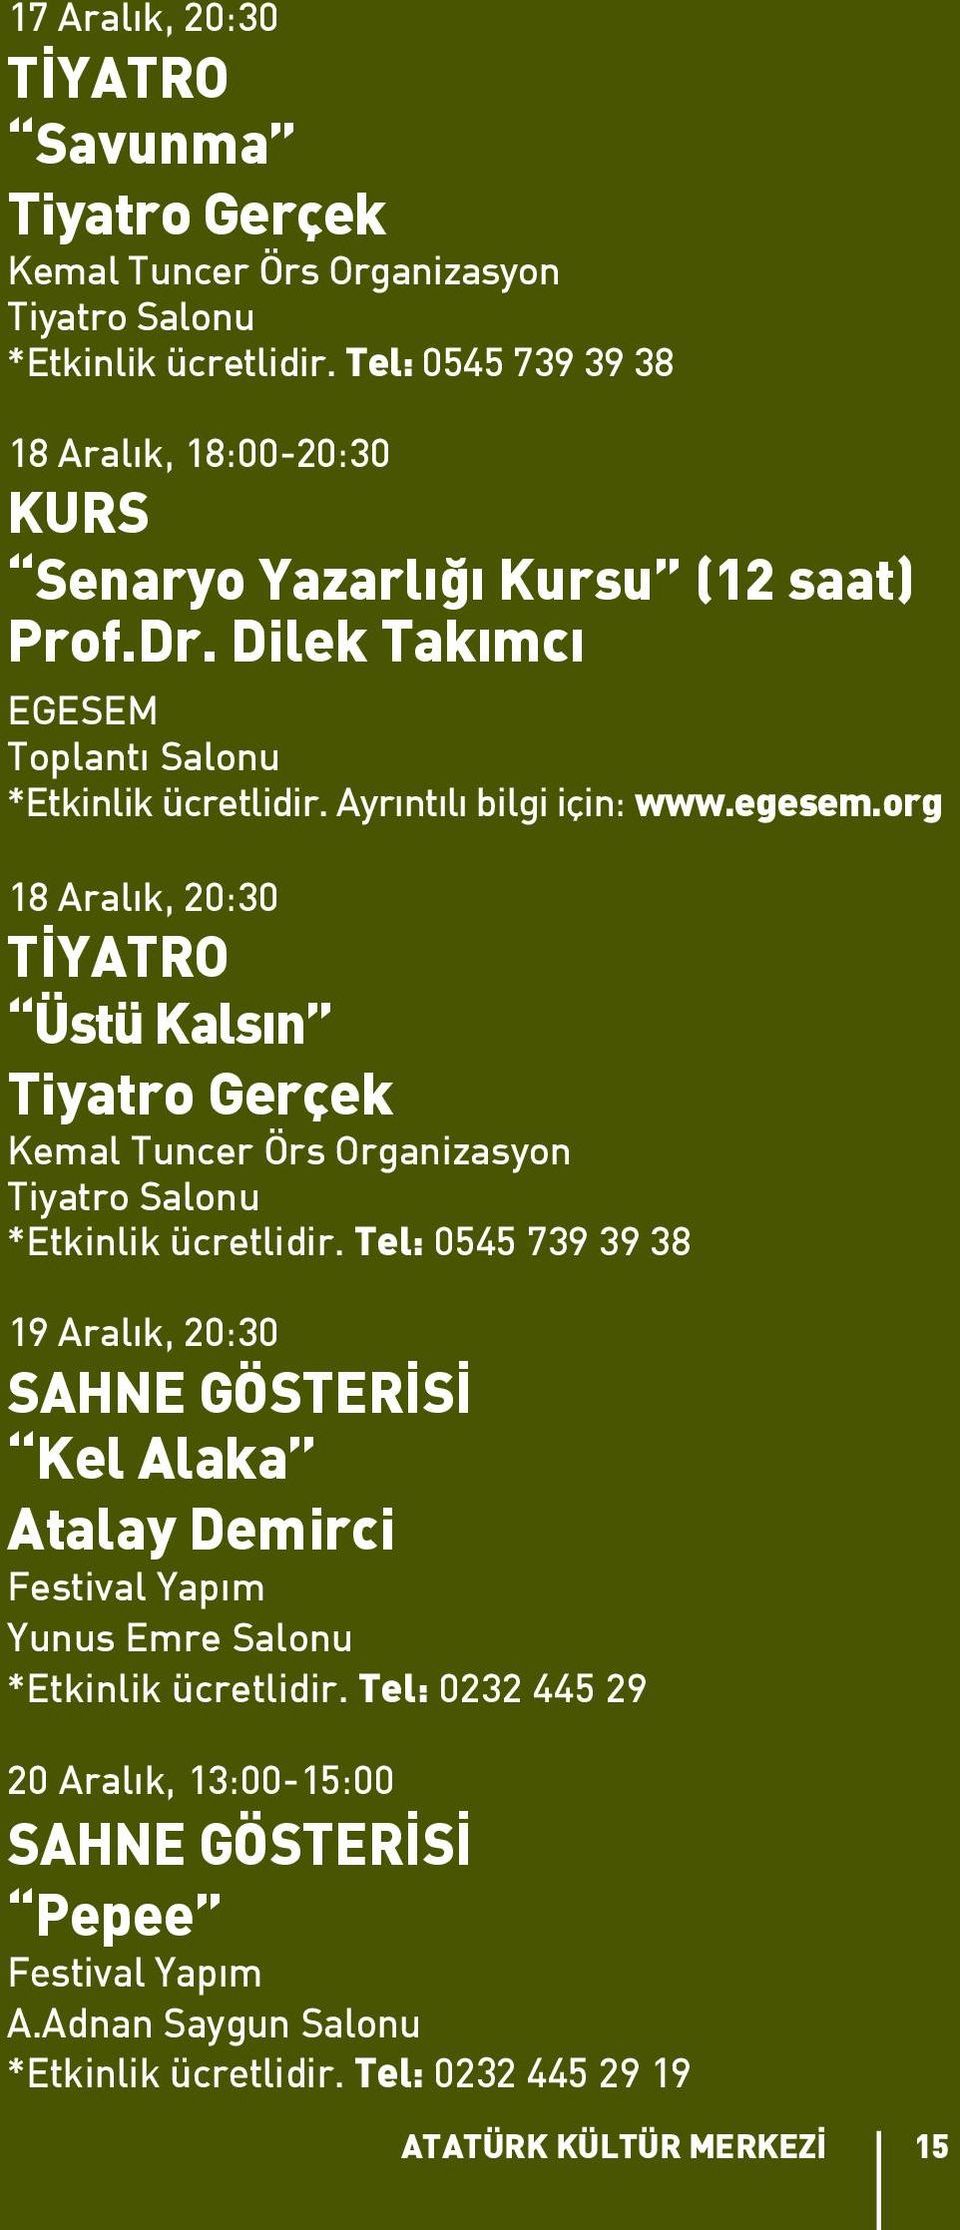 egesem.org 18 Aralık, 20:30 Üstü Kalsın Tiyatro Gerçek Kemal Tuncer Örs Organizasyon Tiyatro Salonu *Etkinlik ücretlidir.